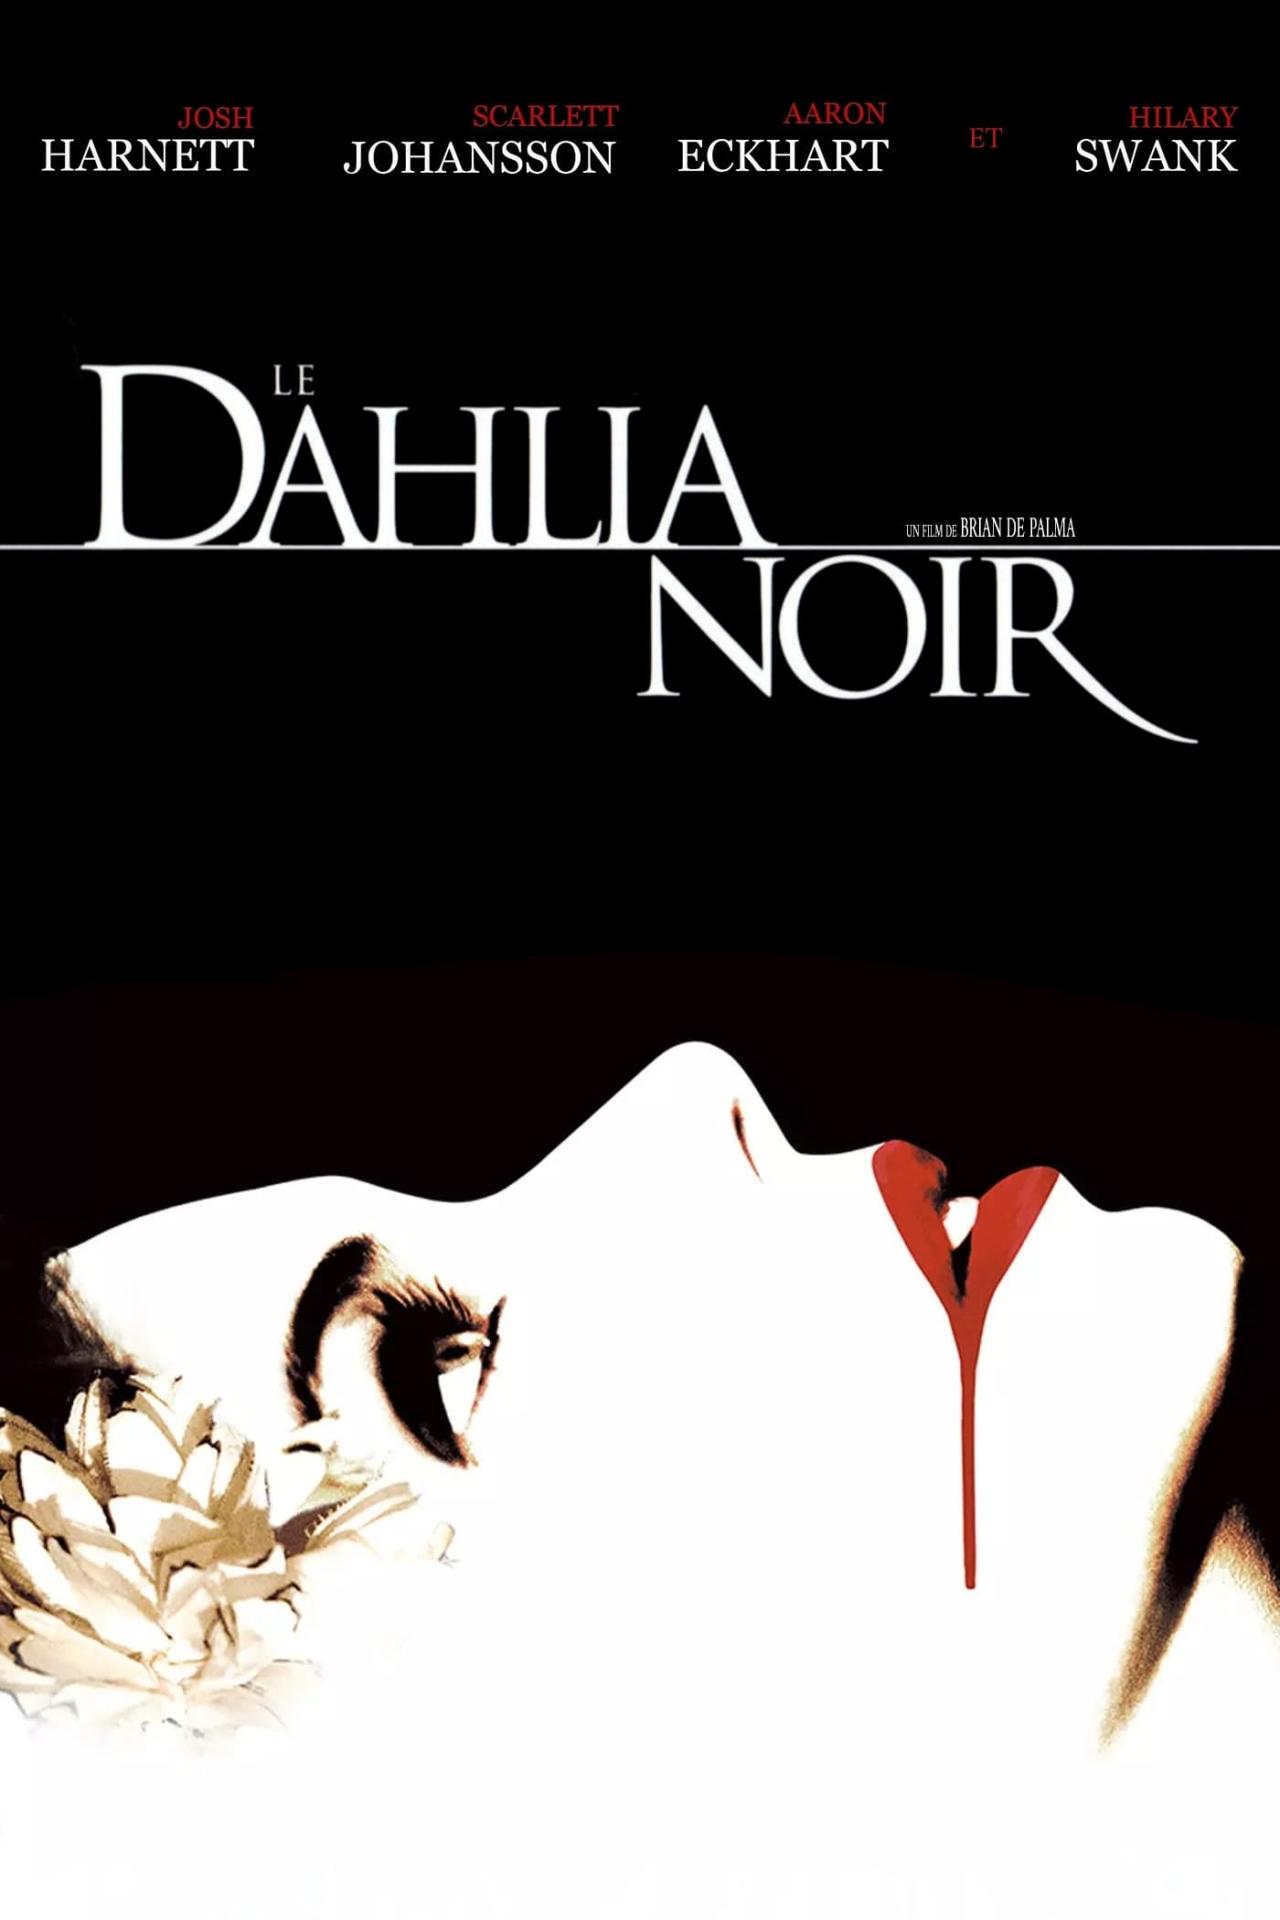 Le Dahlia noir est-il disponible sur Netflix ou autre ?